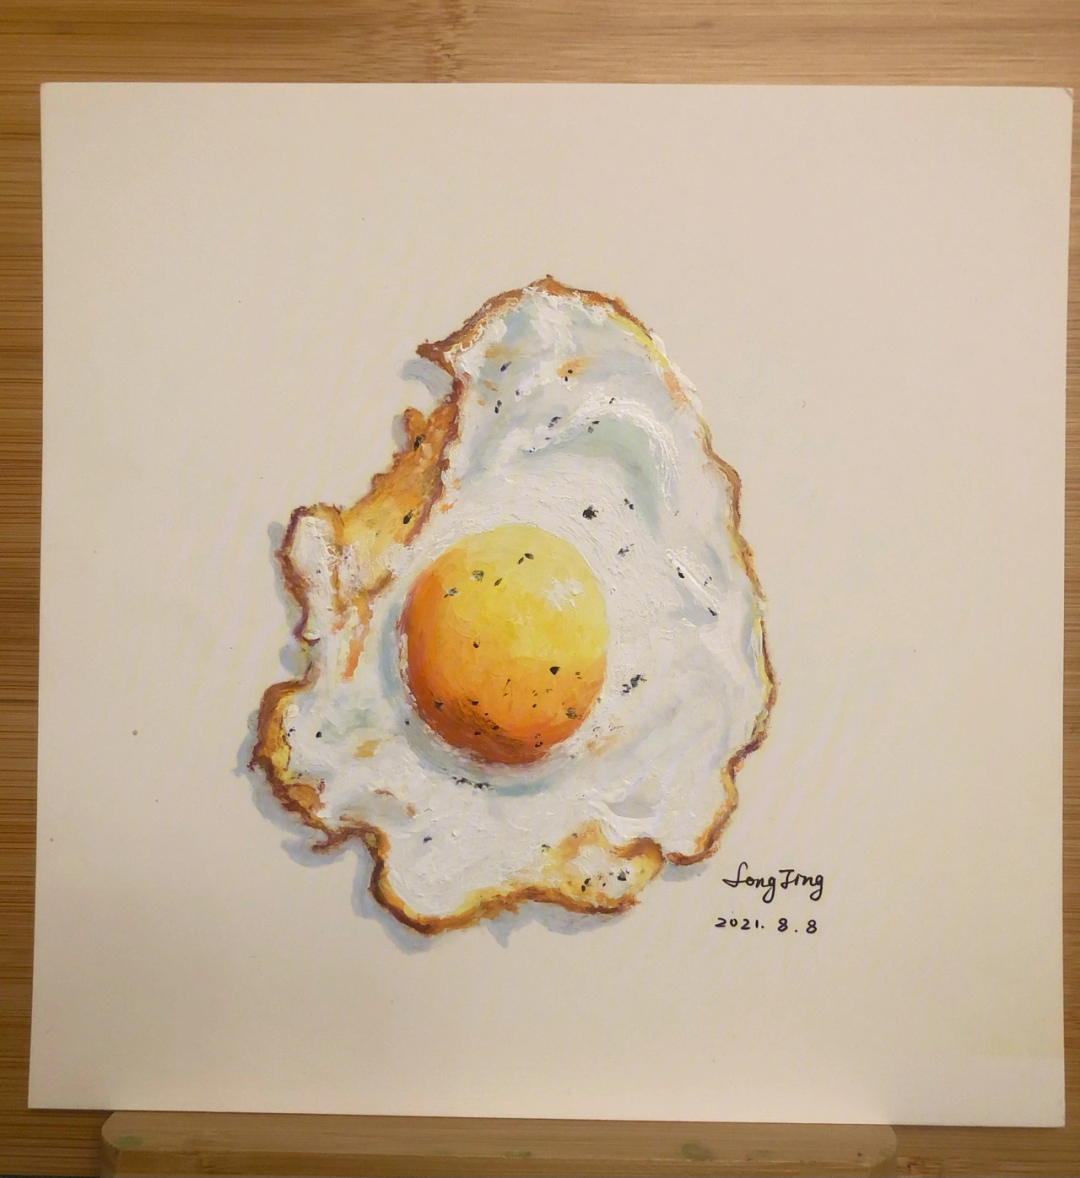 煎鸡蛋的画法图片